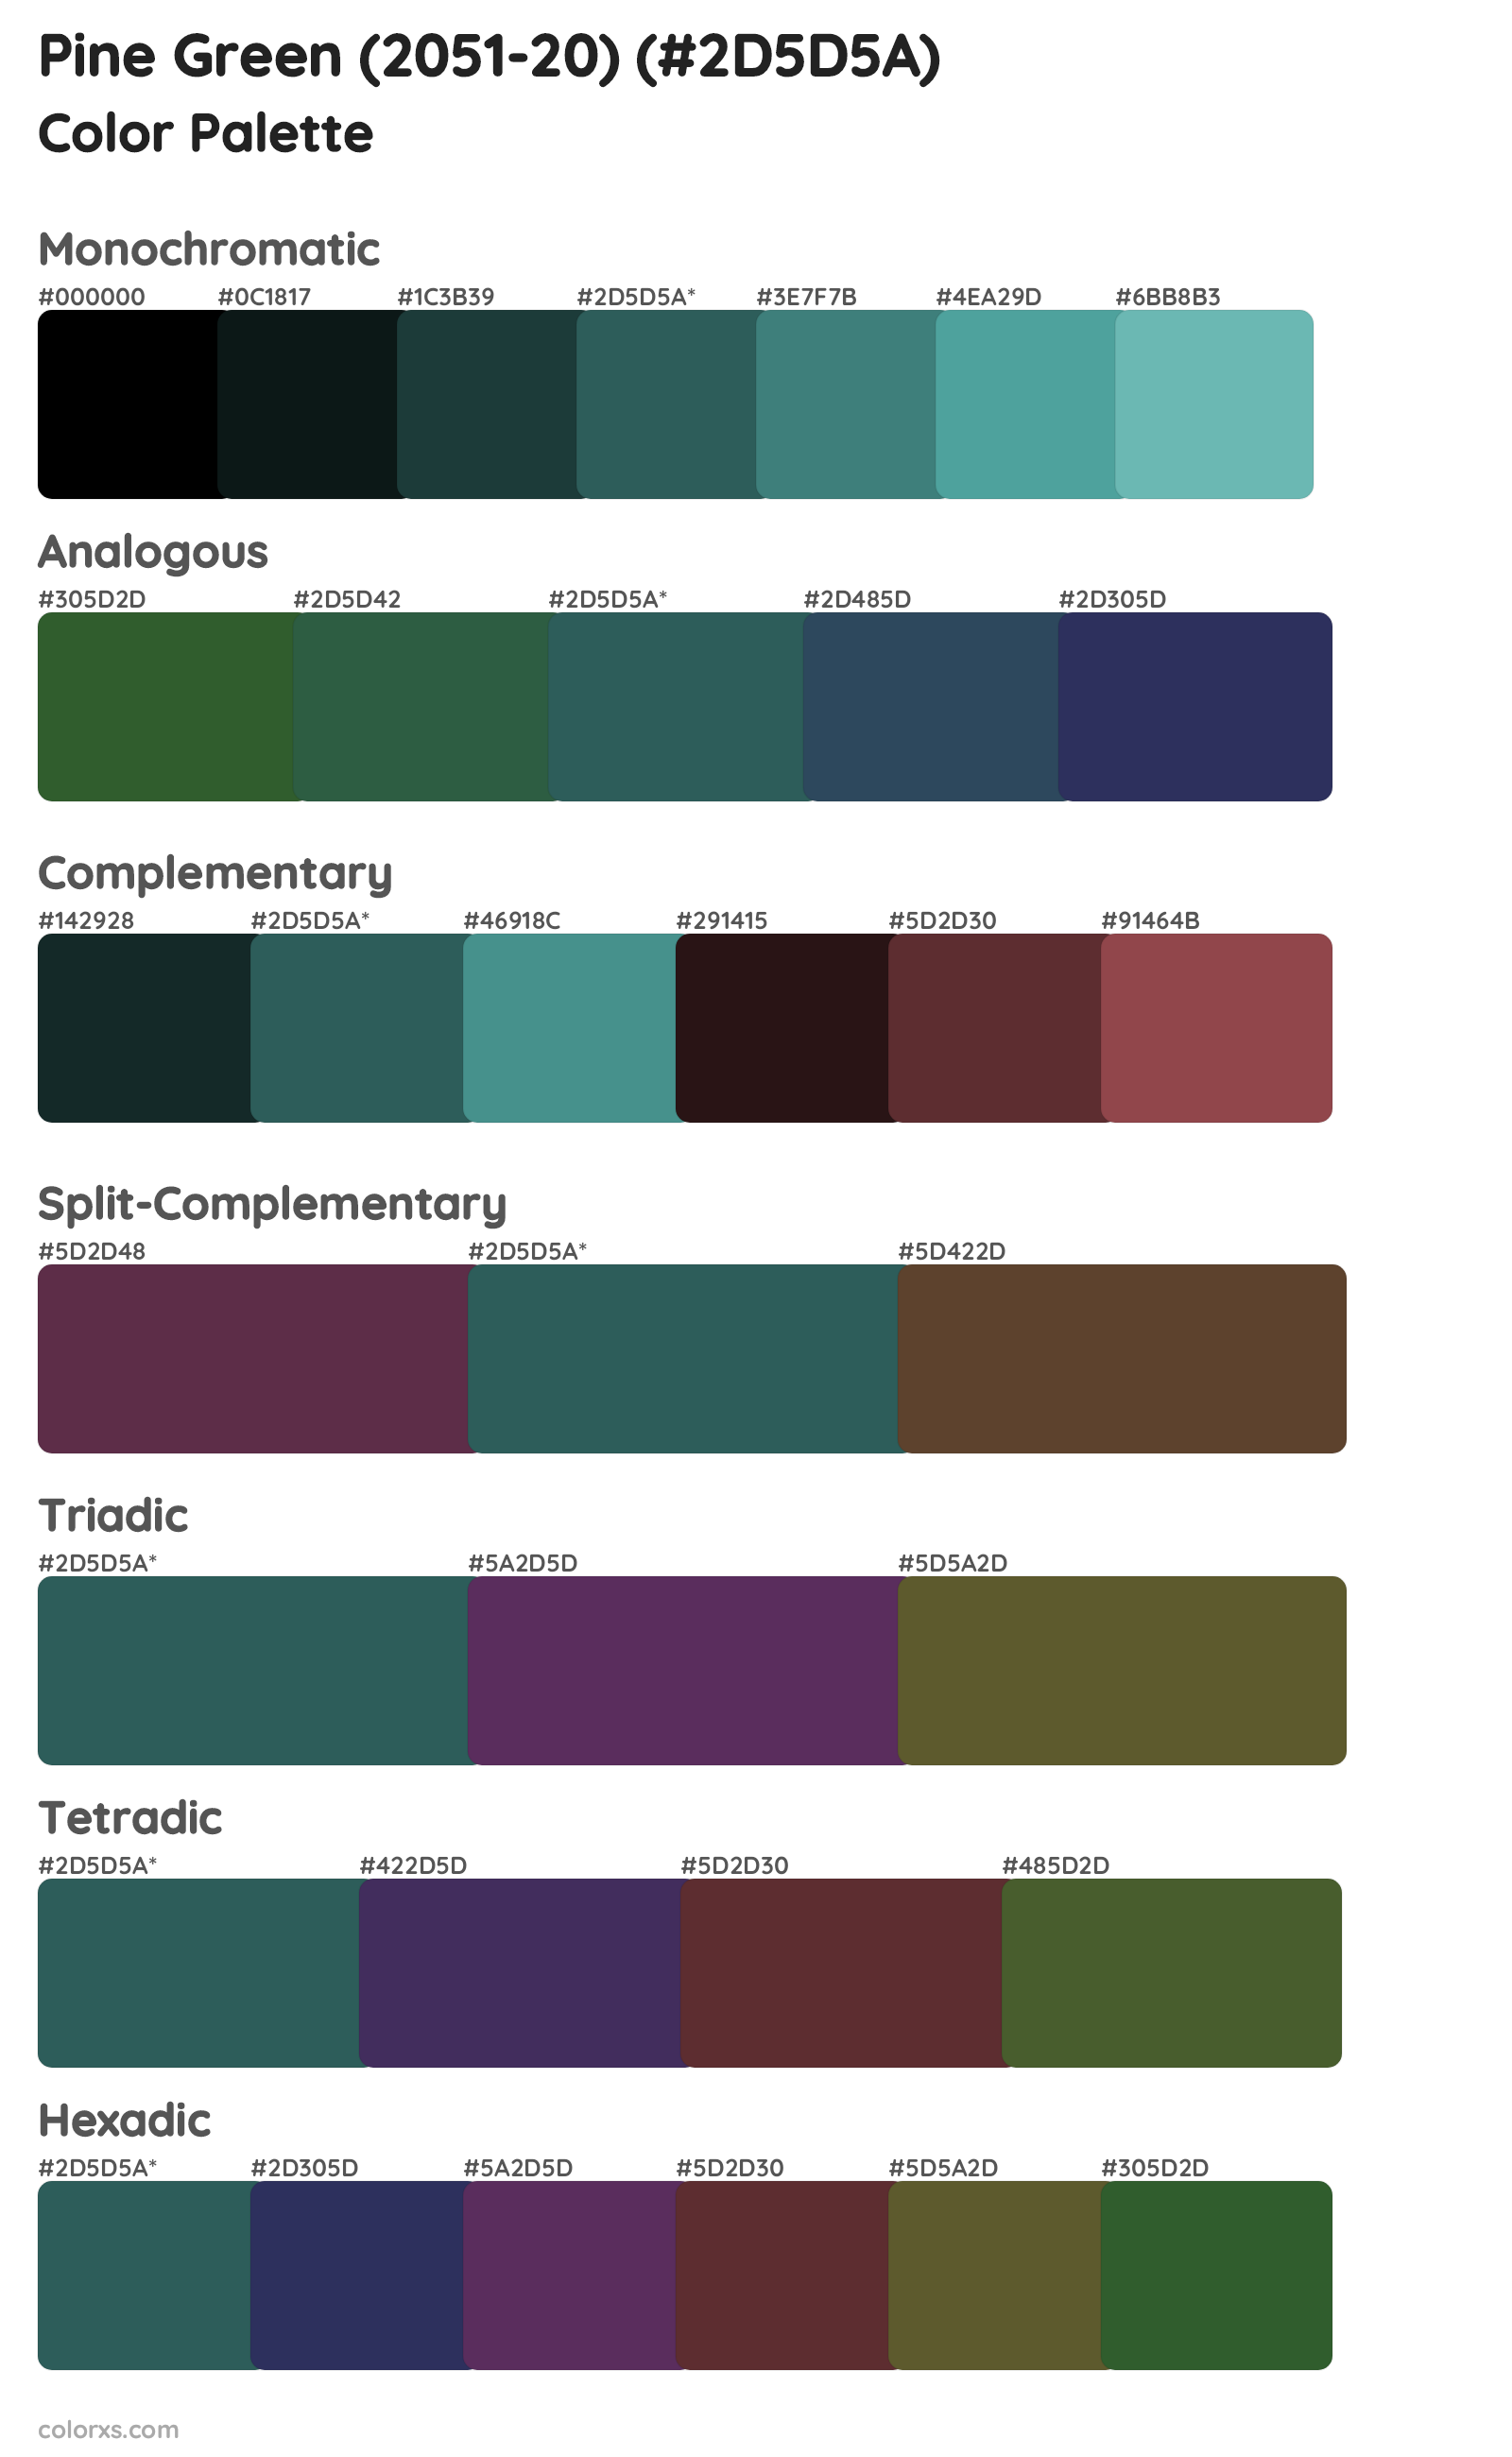 Pine Green (2051-20) Color Scheme Palettes